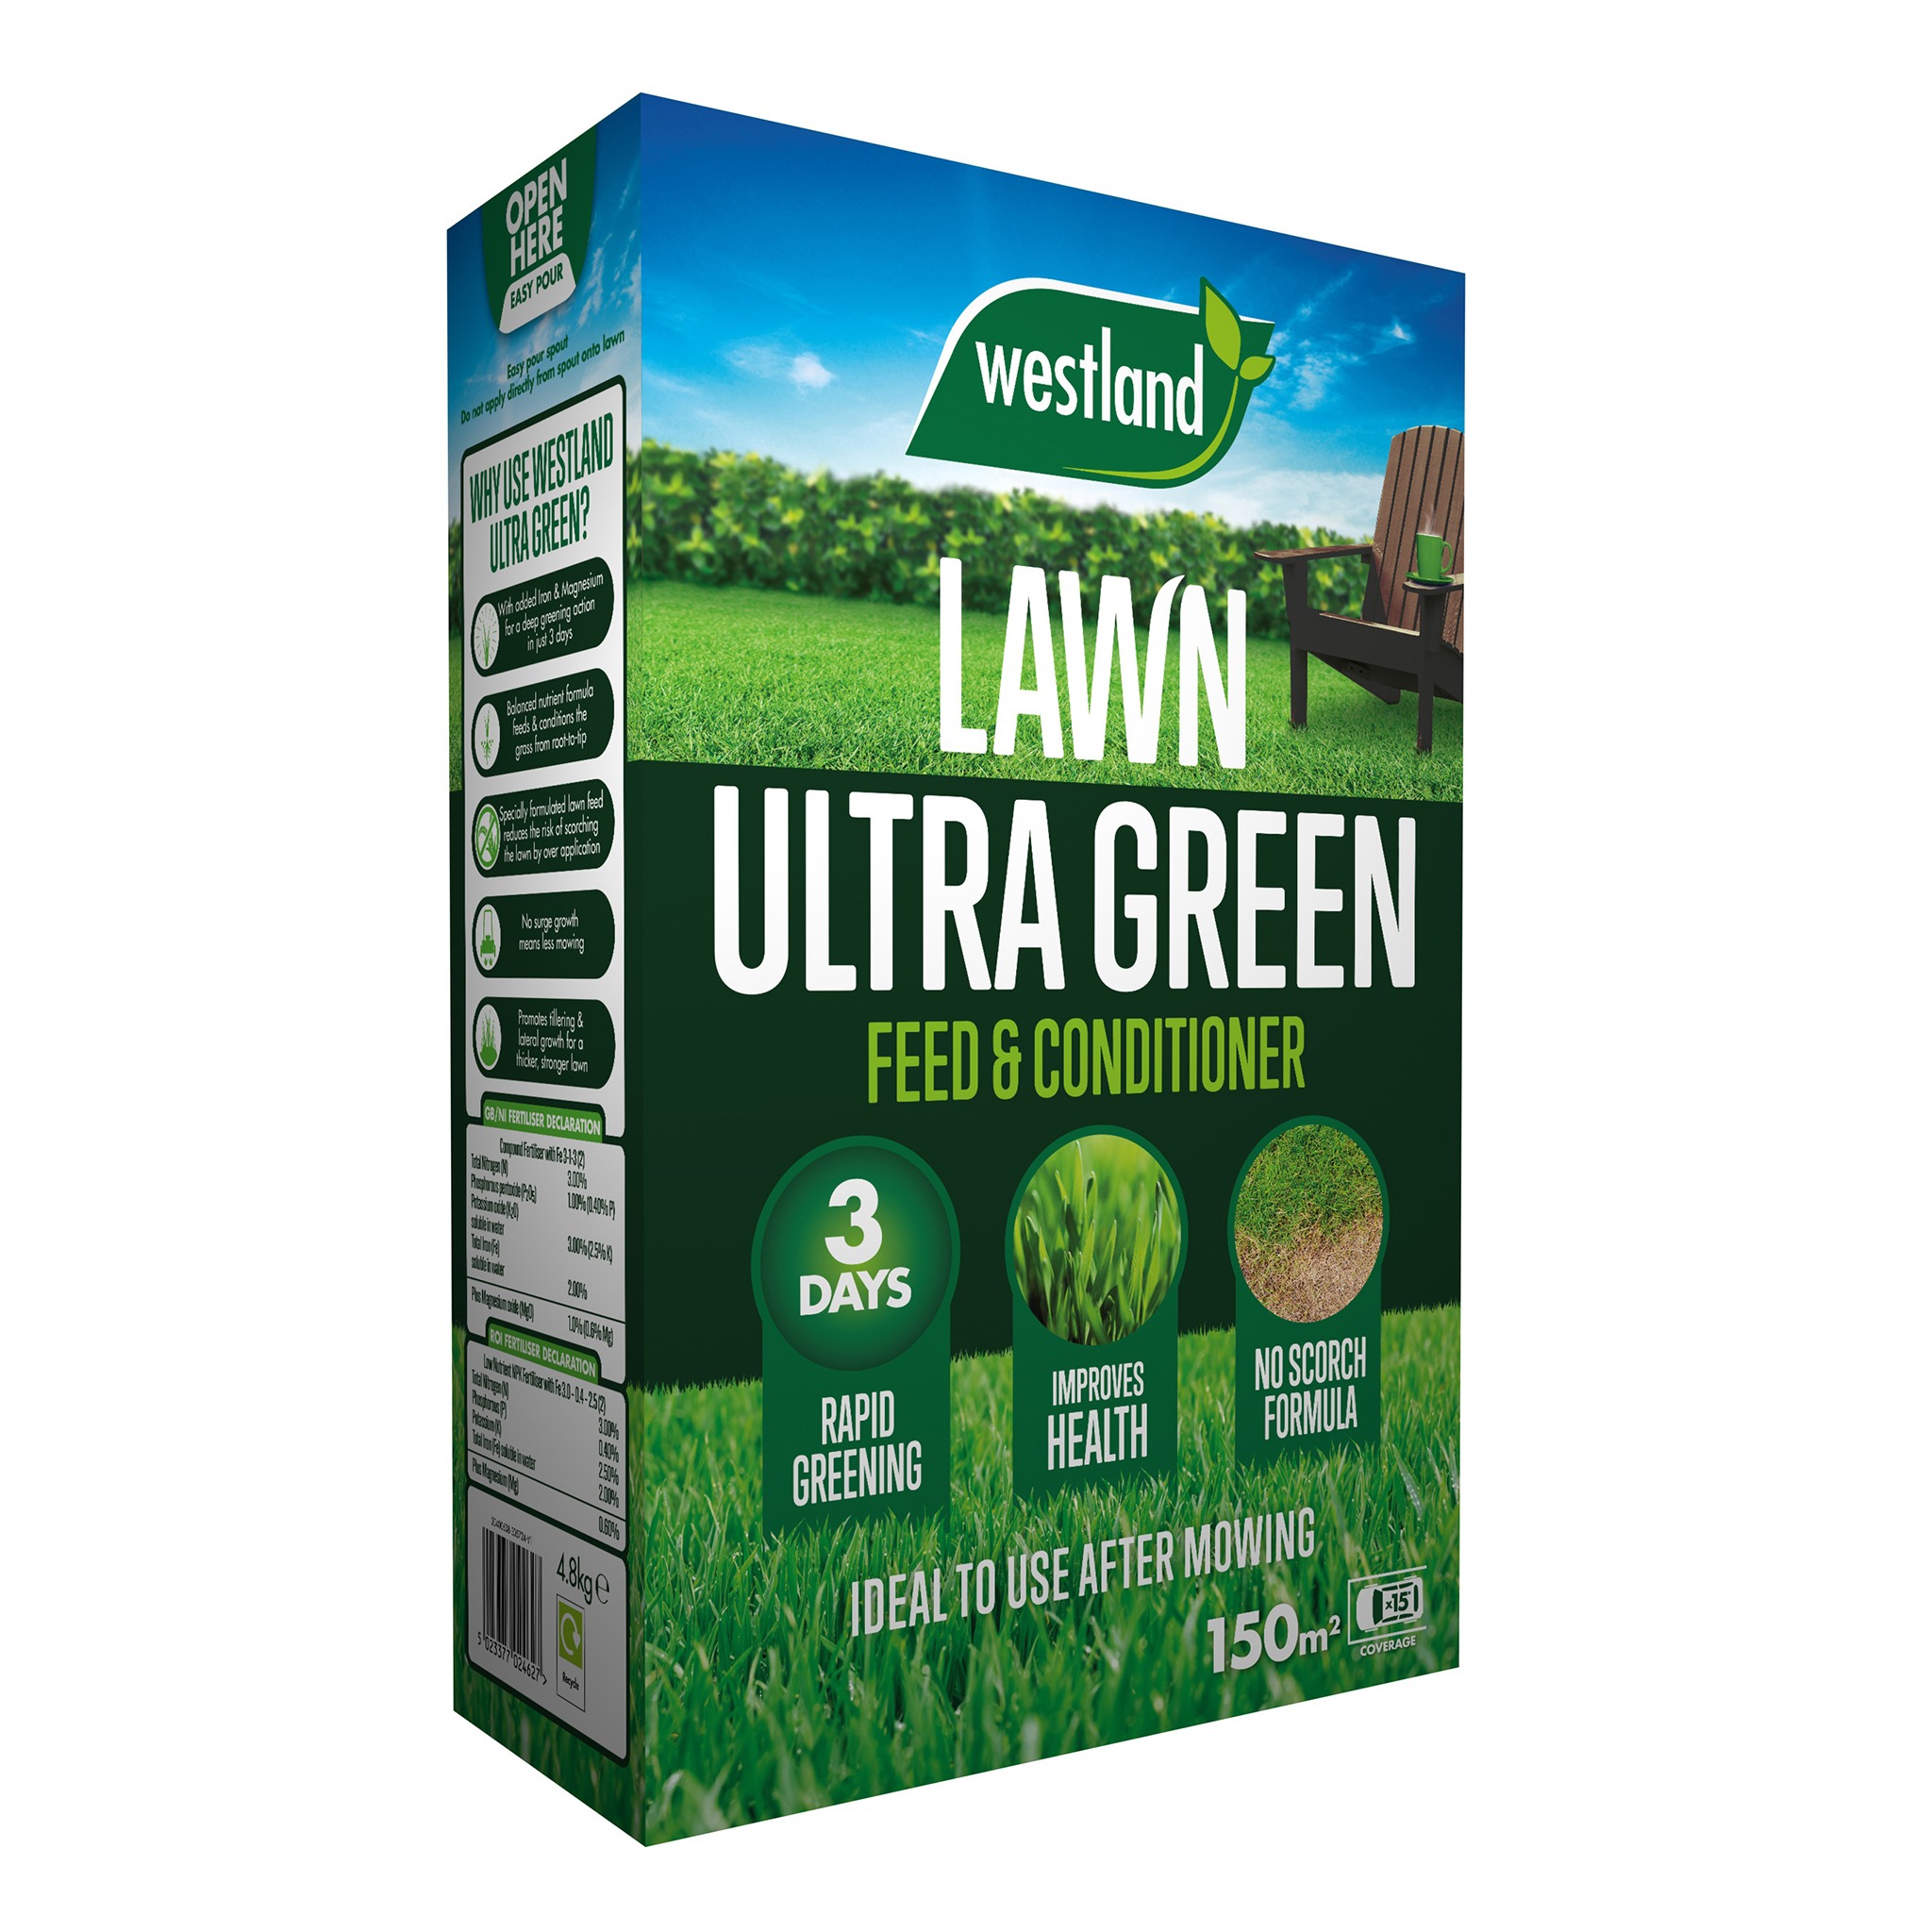 westland lawn ultra green 150m2 cut out